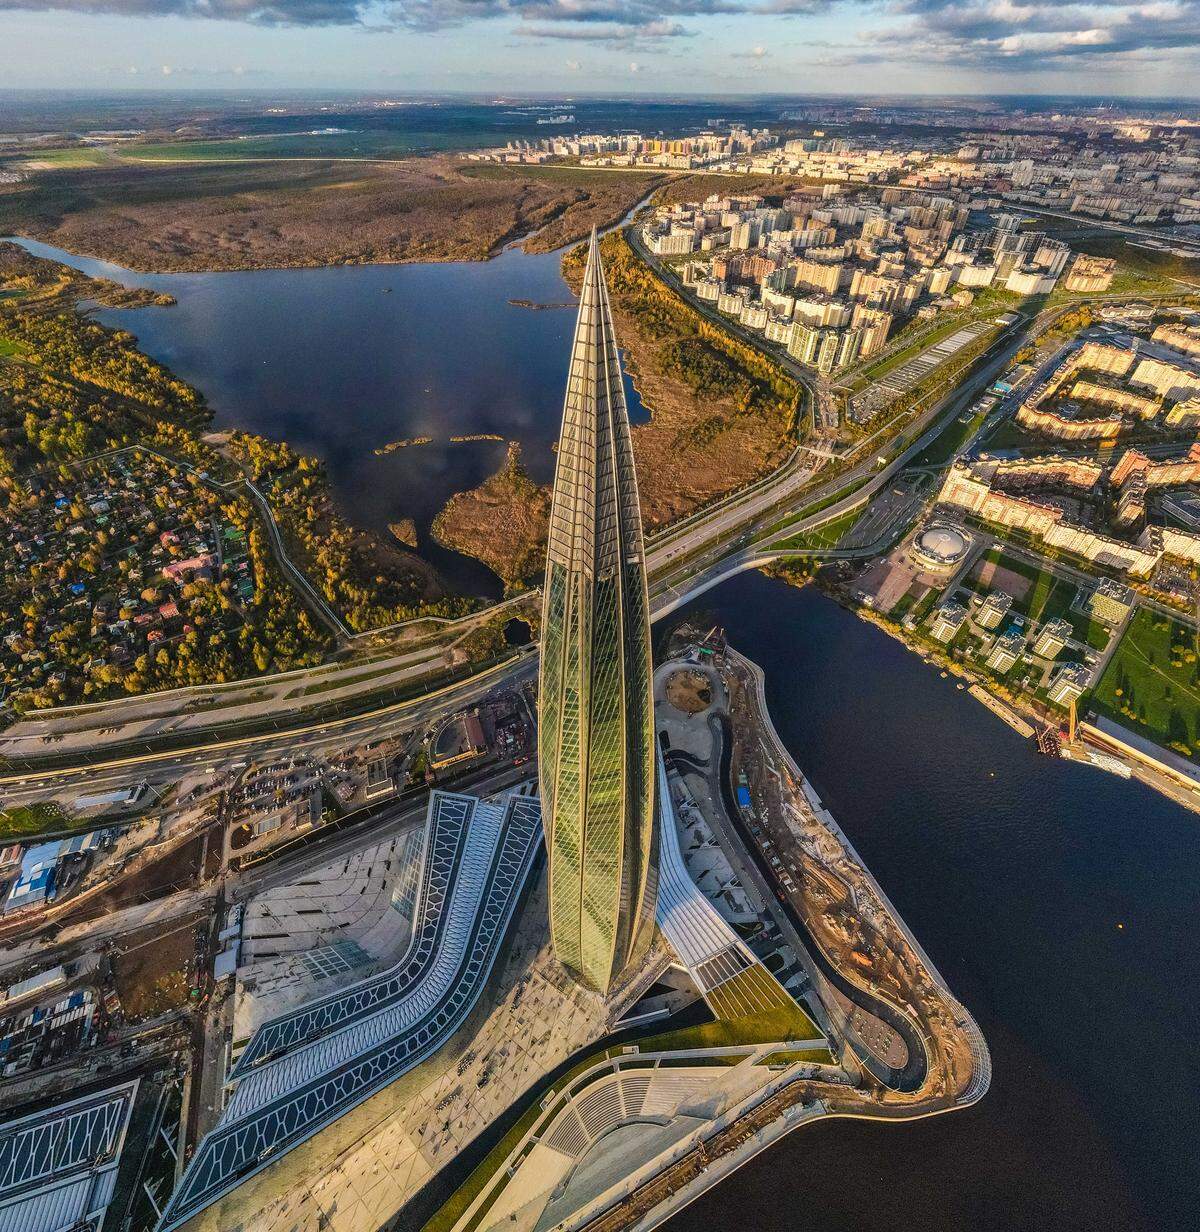 Der Emporis Skyscraper Award, einer der renommiertesten Preise für Hochhausarchitektur, geht zum ersten Mal in seiner 20-jährigen Geschichte an ein Projekt in Russland. . . .